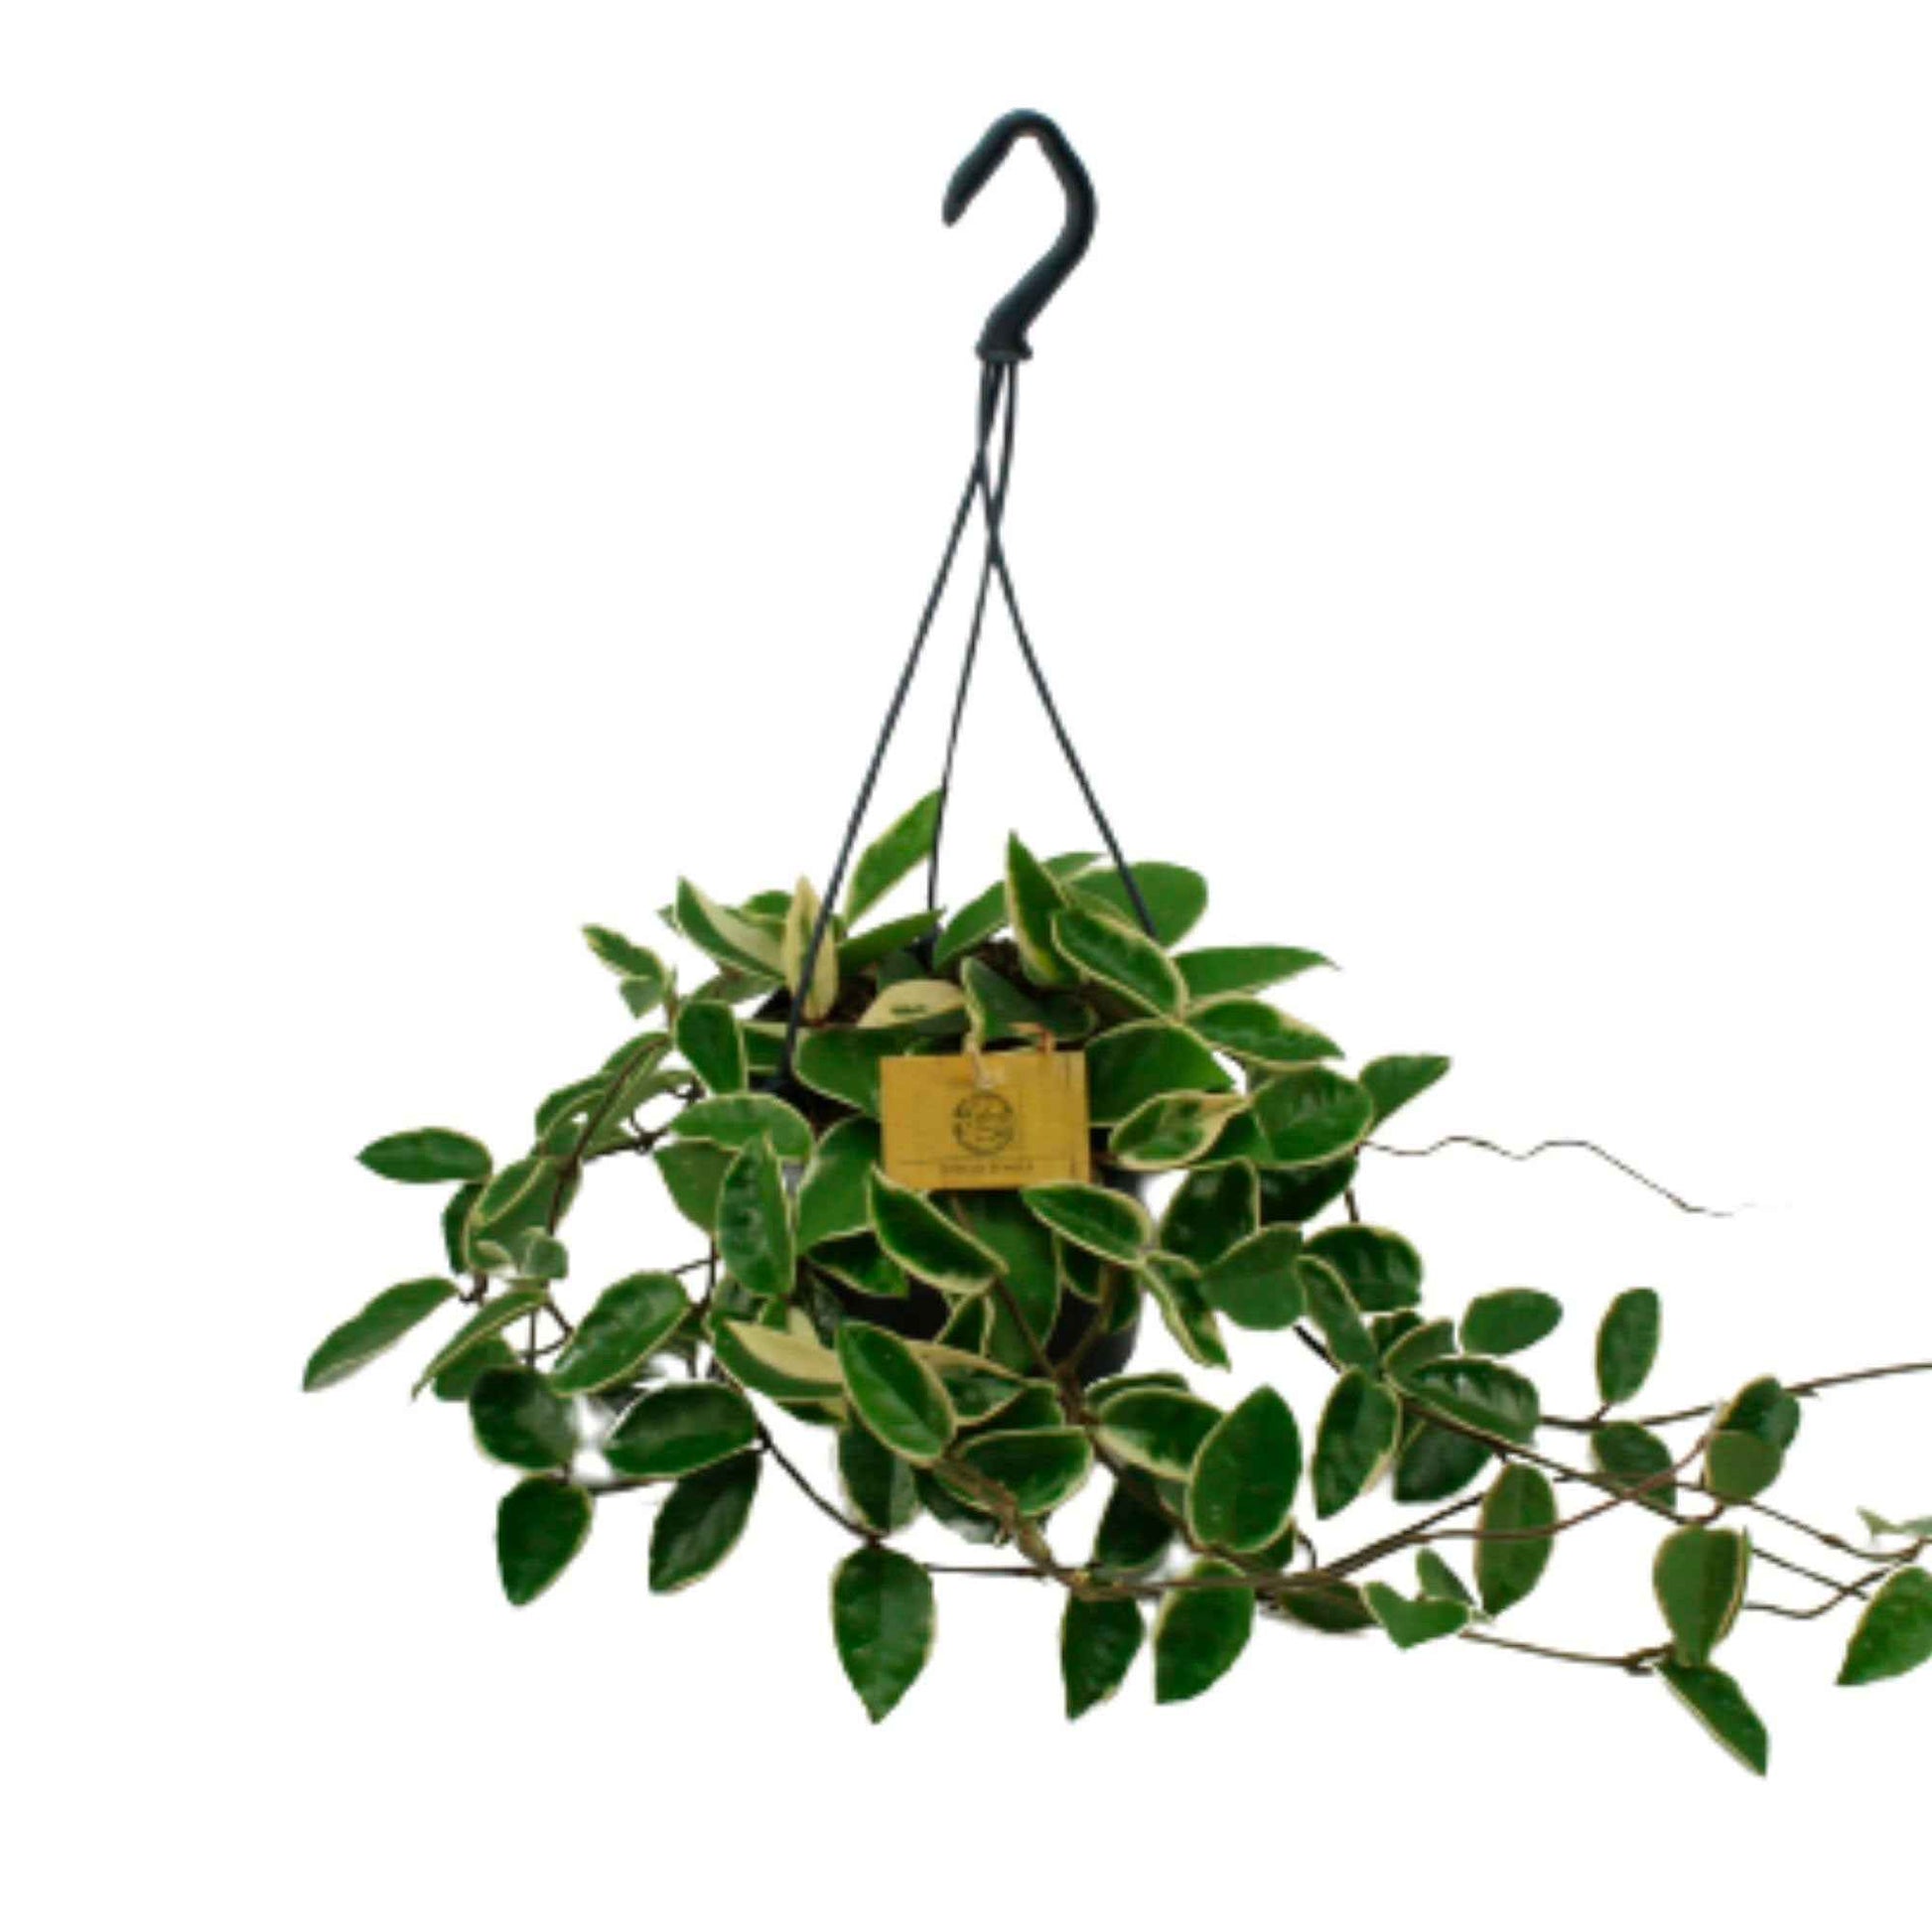 Wasbloem Hoya Krimson Queen - Hangplant - Groene kamerplanten